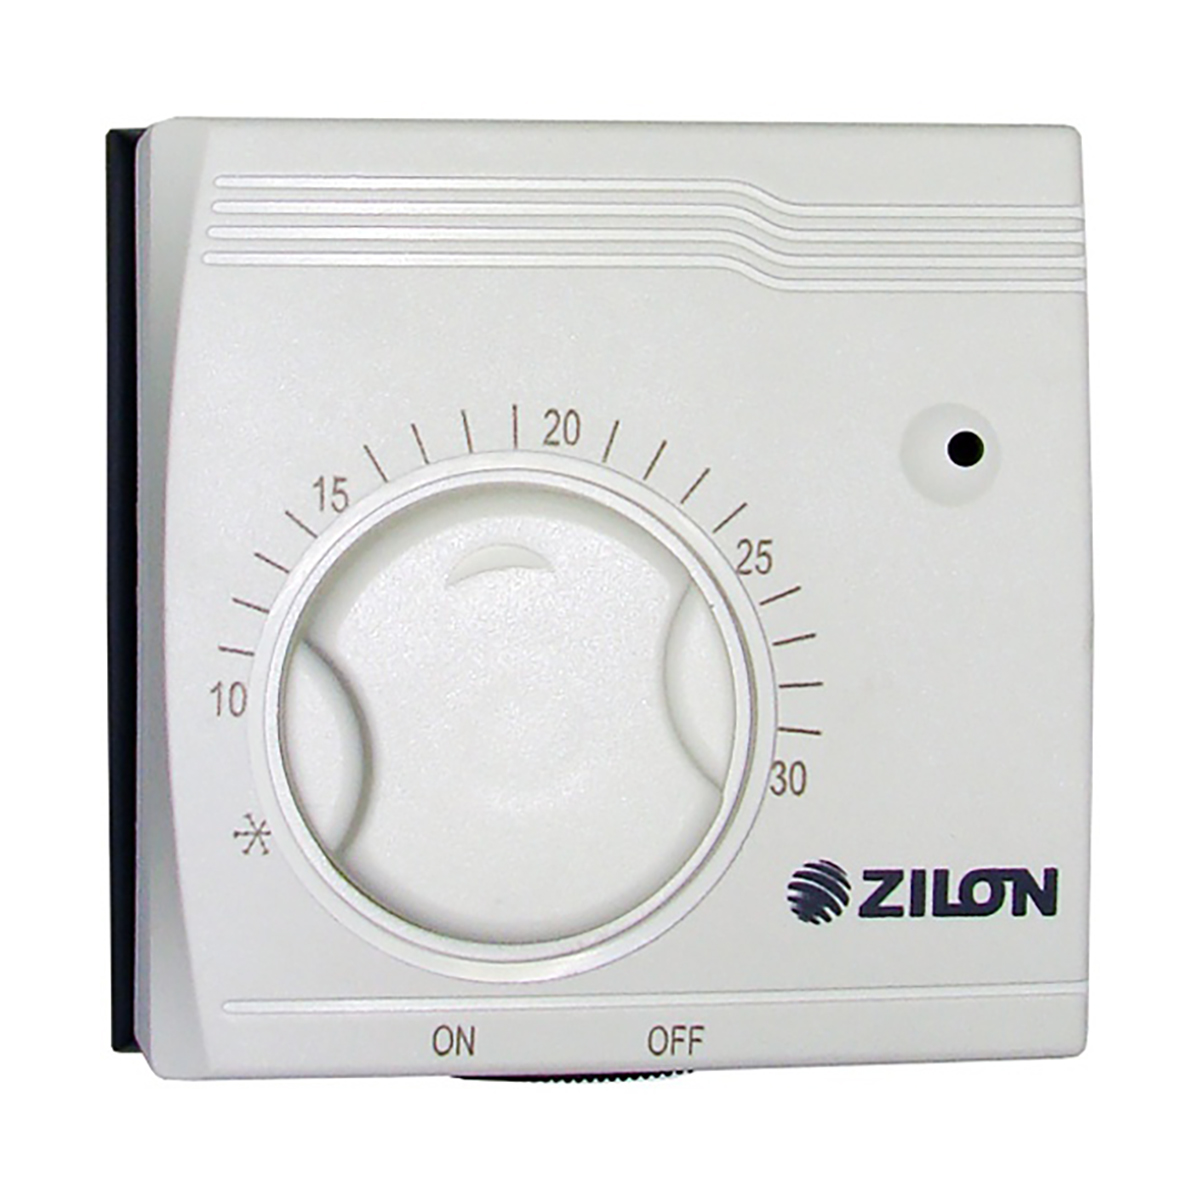 Инфракрасный термостат. Комнатный термостат Zilon za-1.